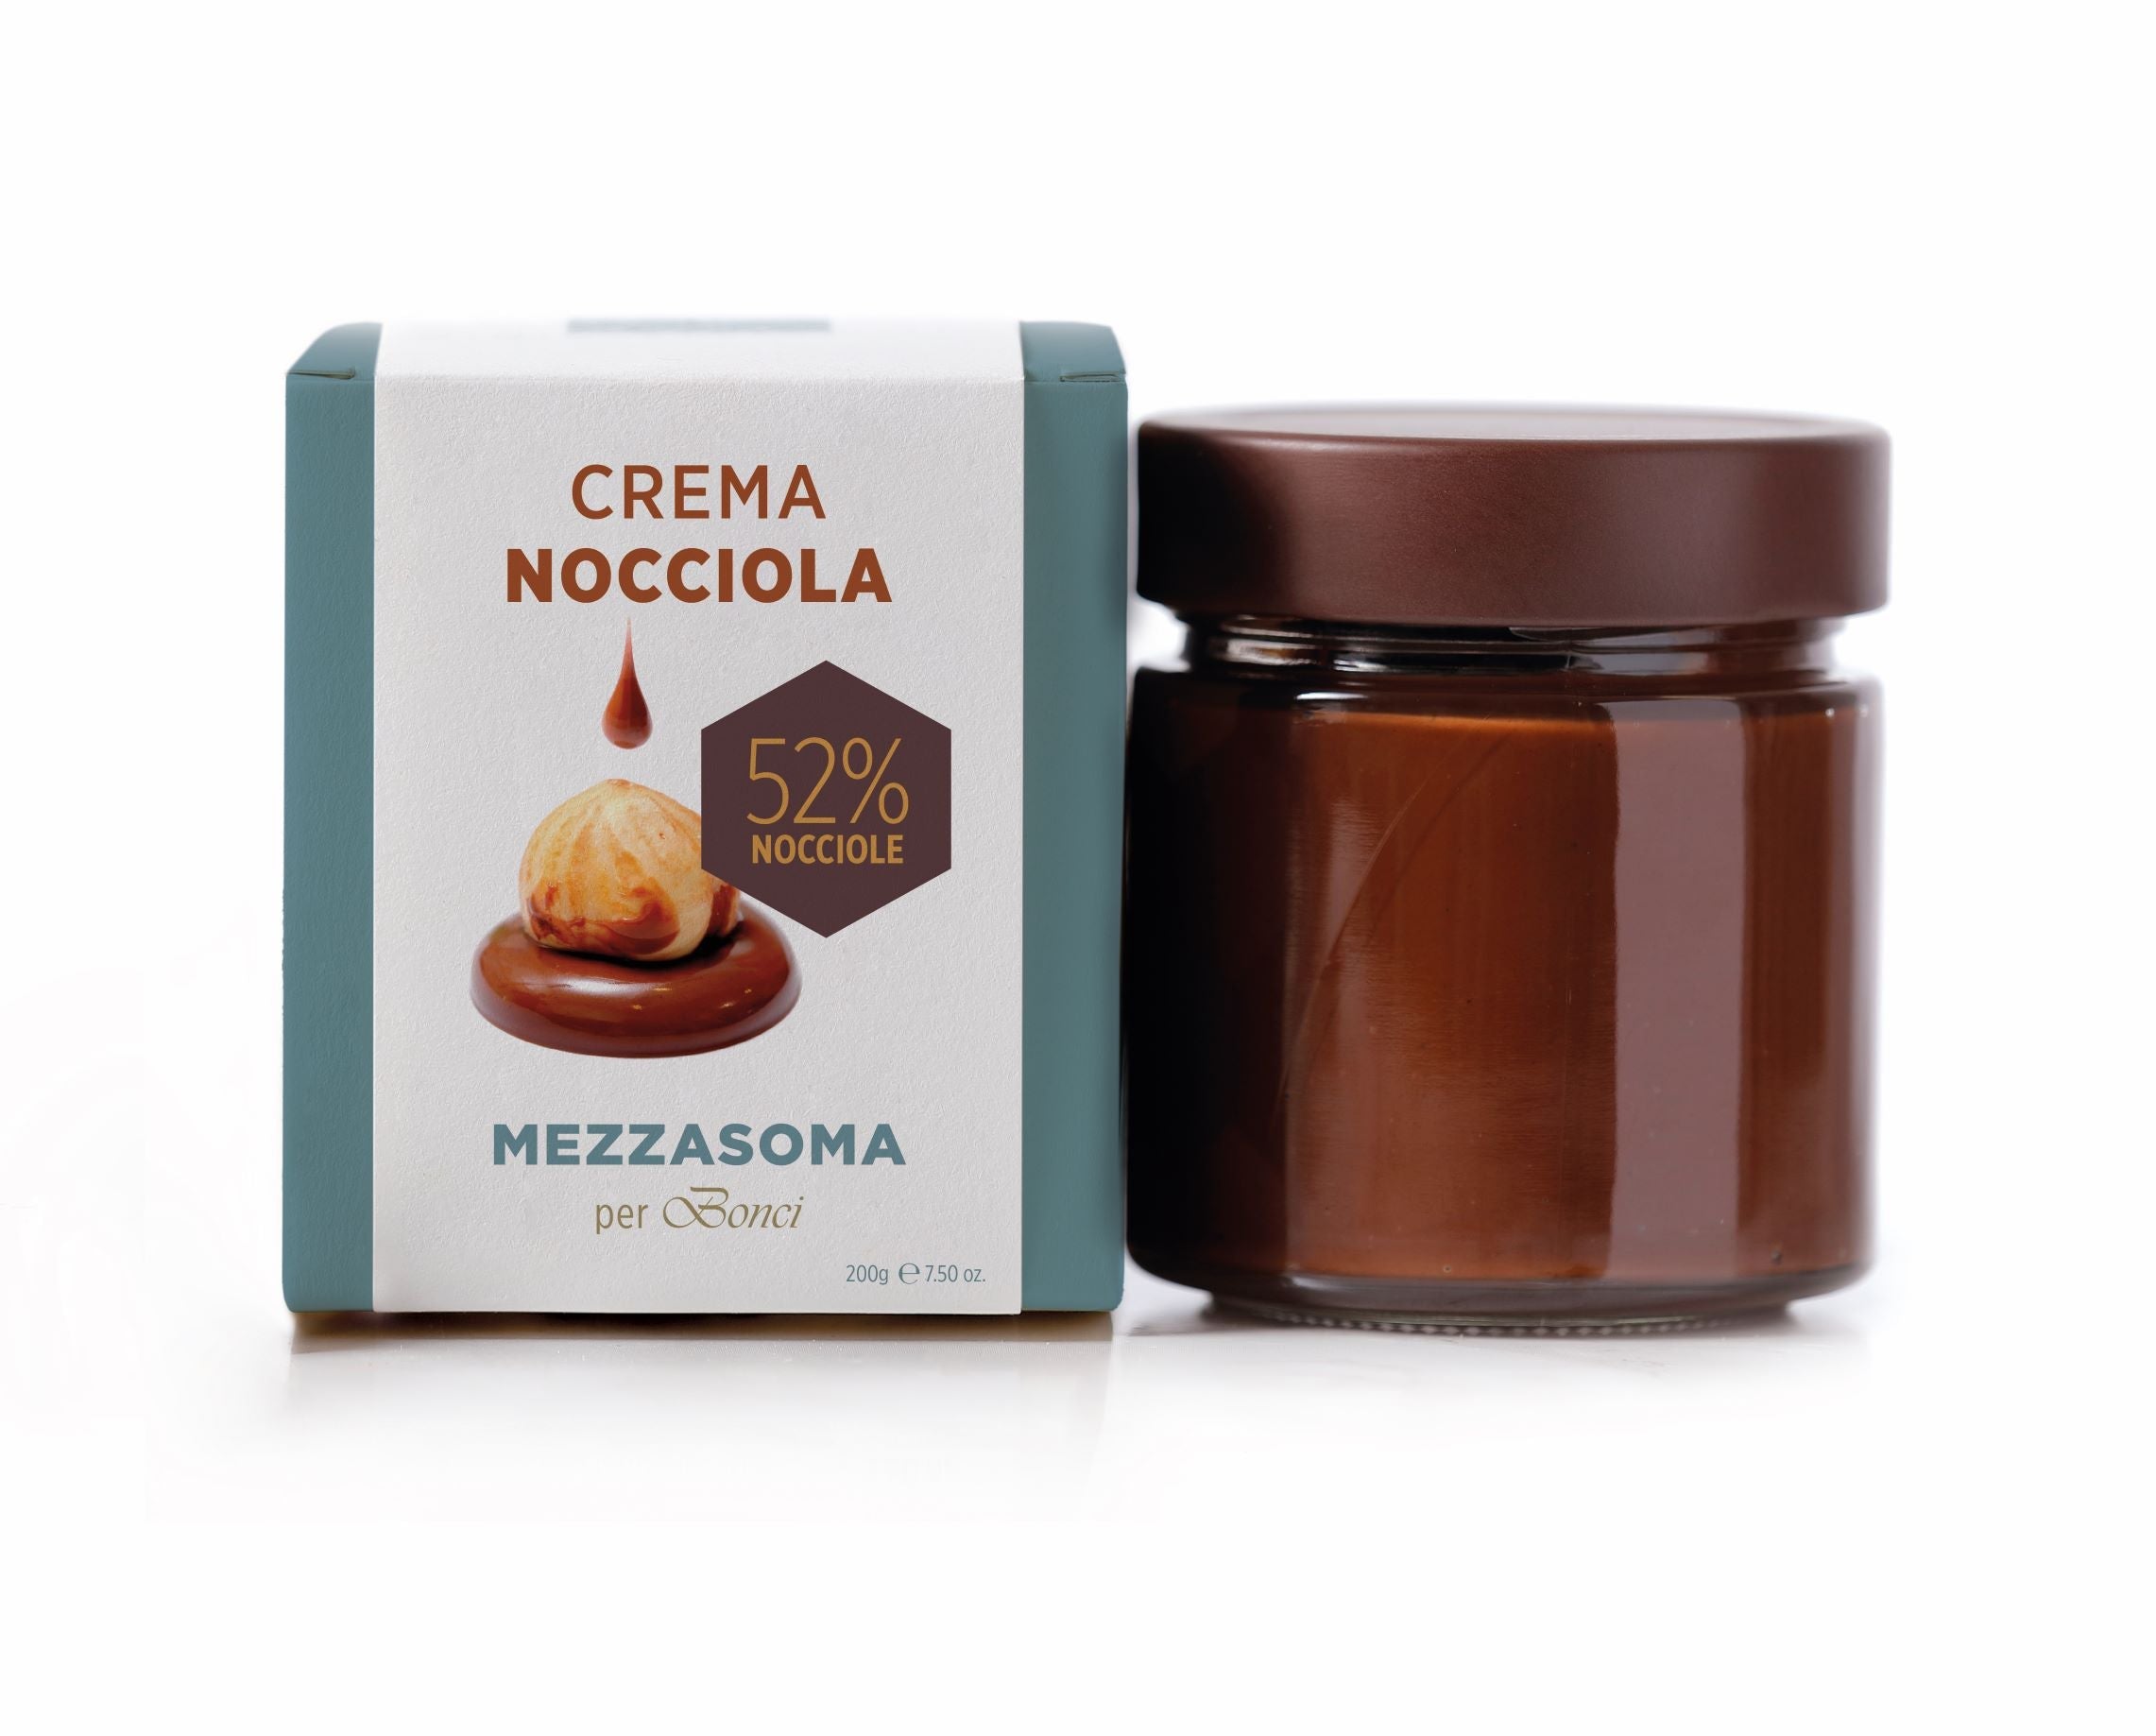 Mezzasoma - crema spalmabile in due versioni NOCCIOLA 52% o CACAO